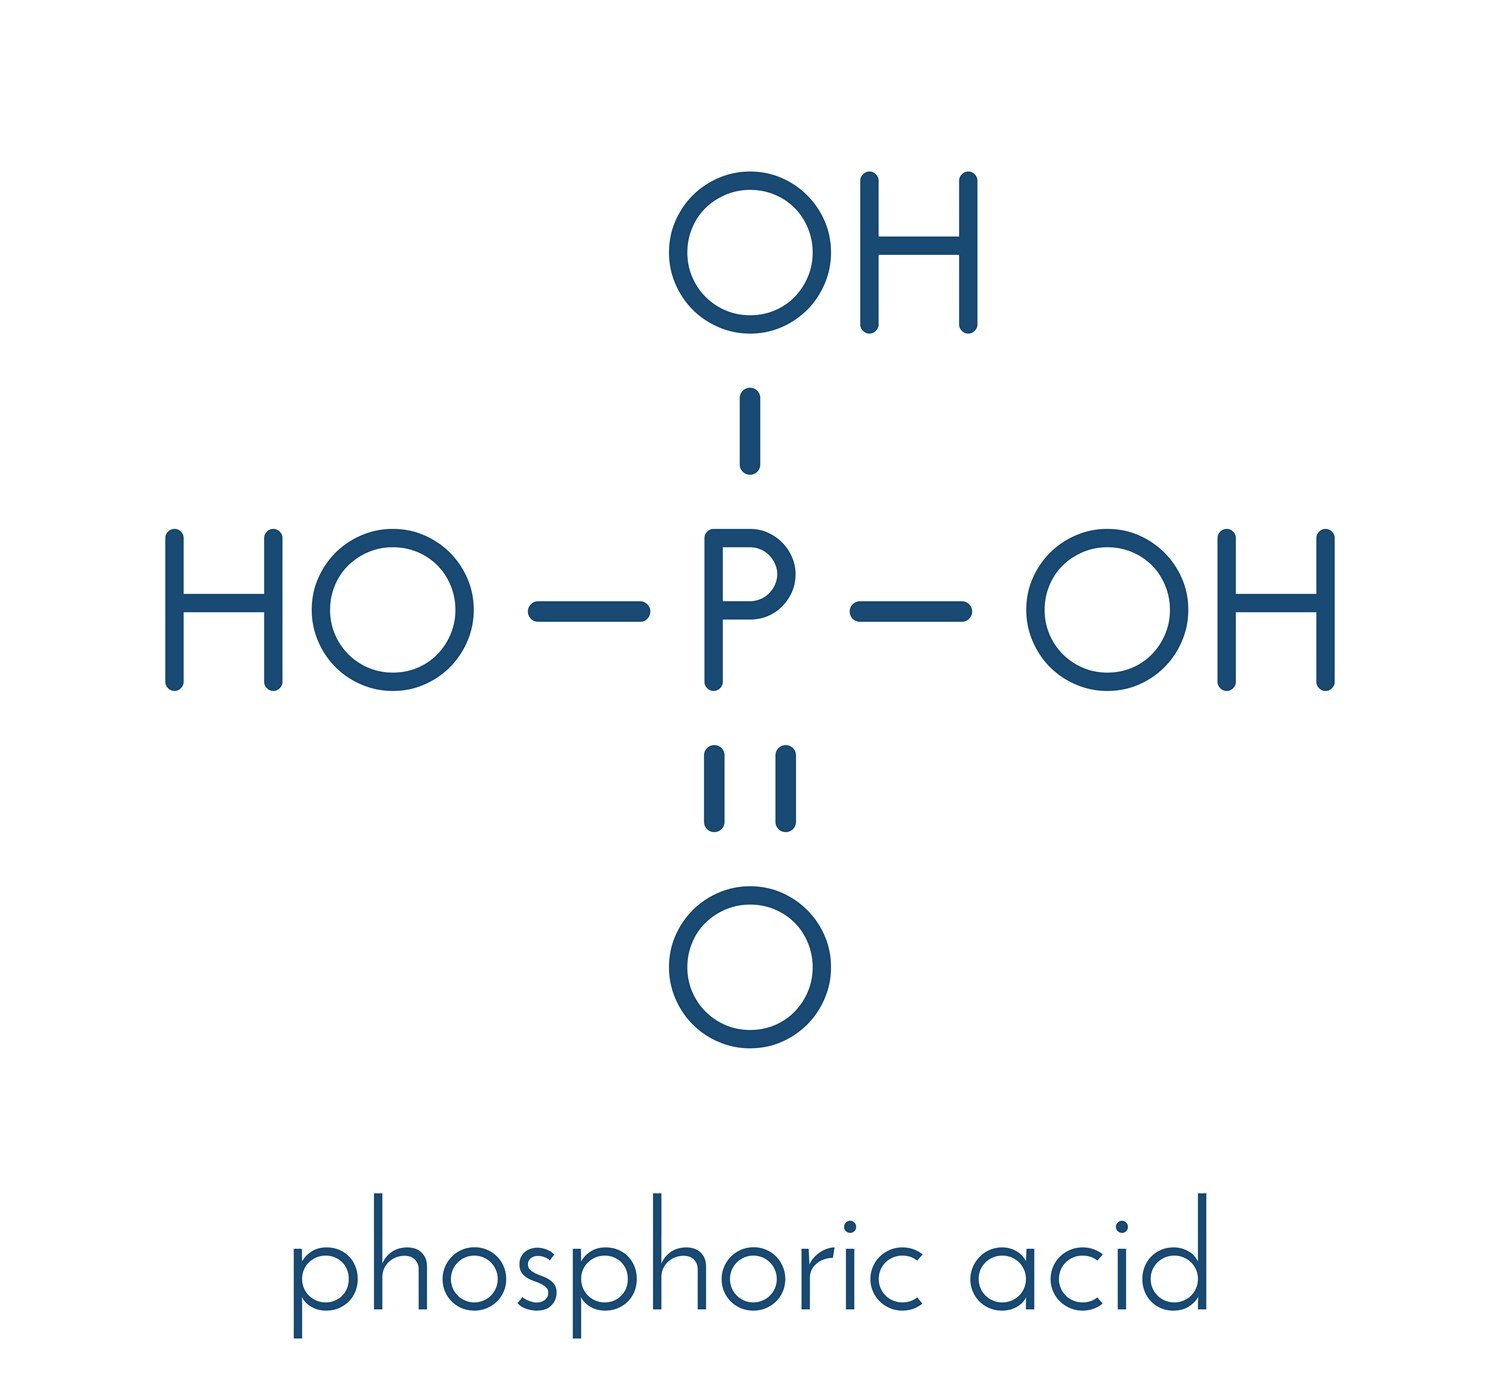 Acide phosphorique